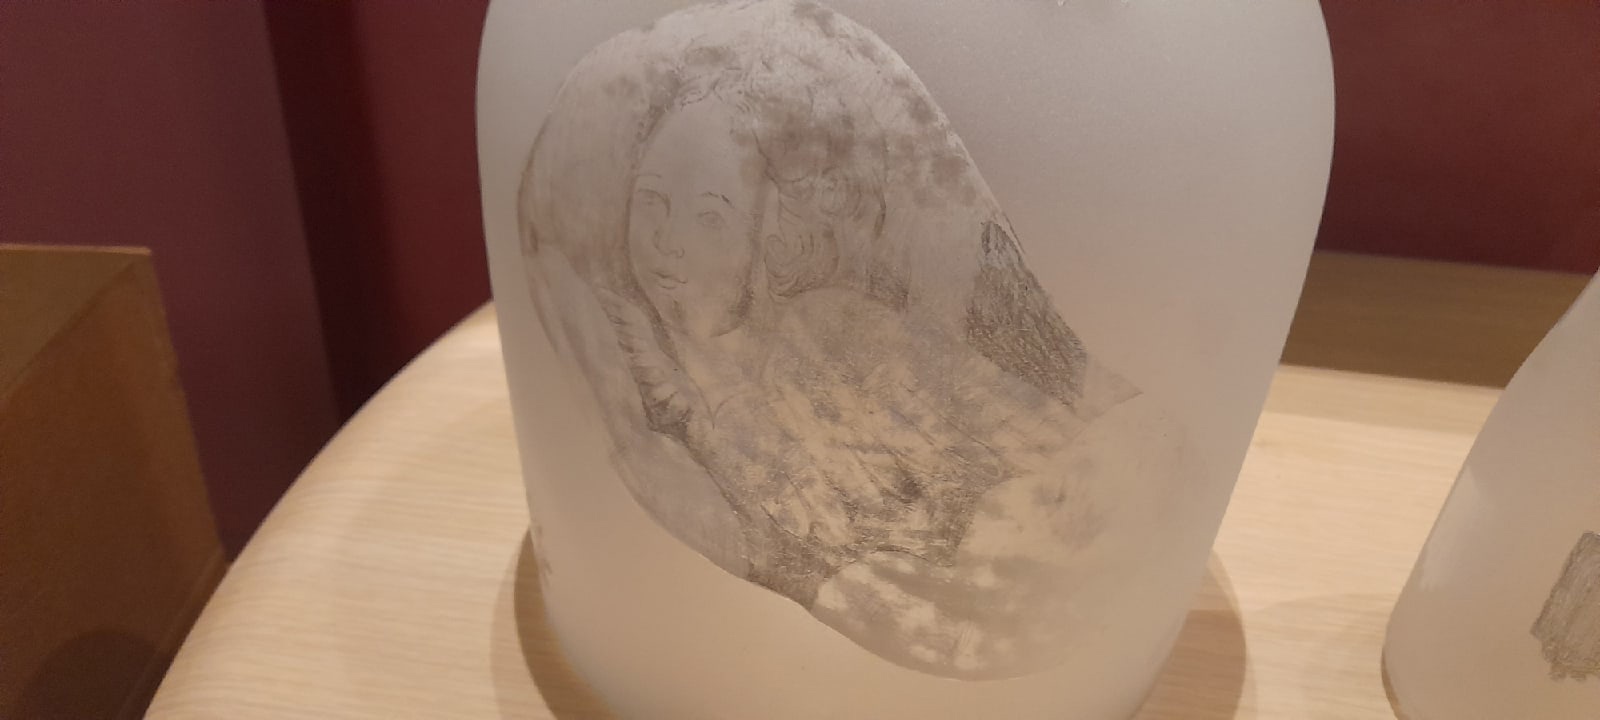 Художница из Санкт-Петербурга представила коллекцию стеклянных ваз и подсвечников, вдохновлённых историей и архитектурой Кенозерья - фото 2